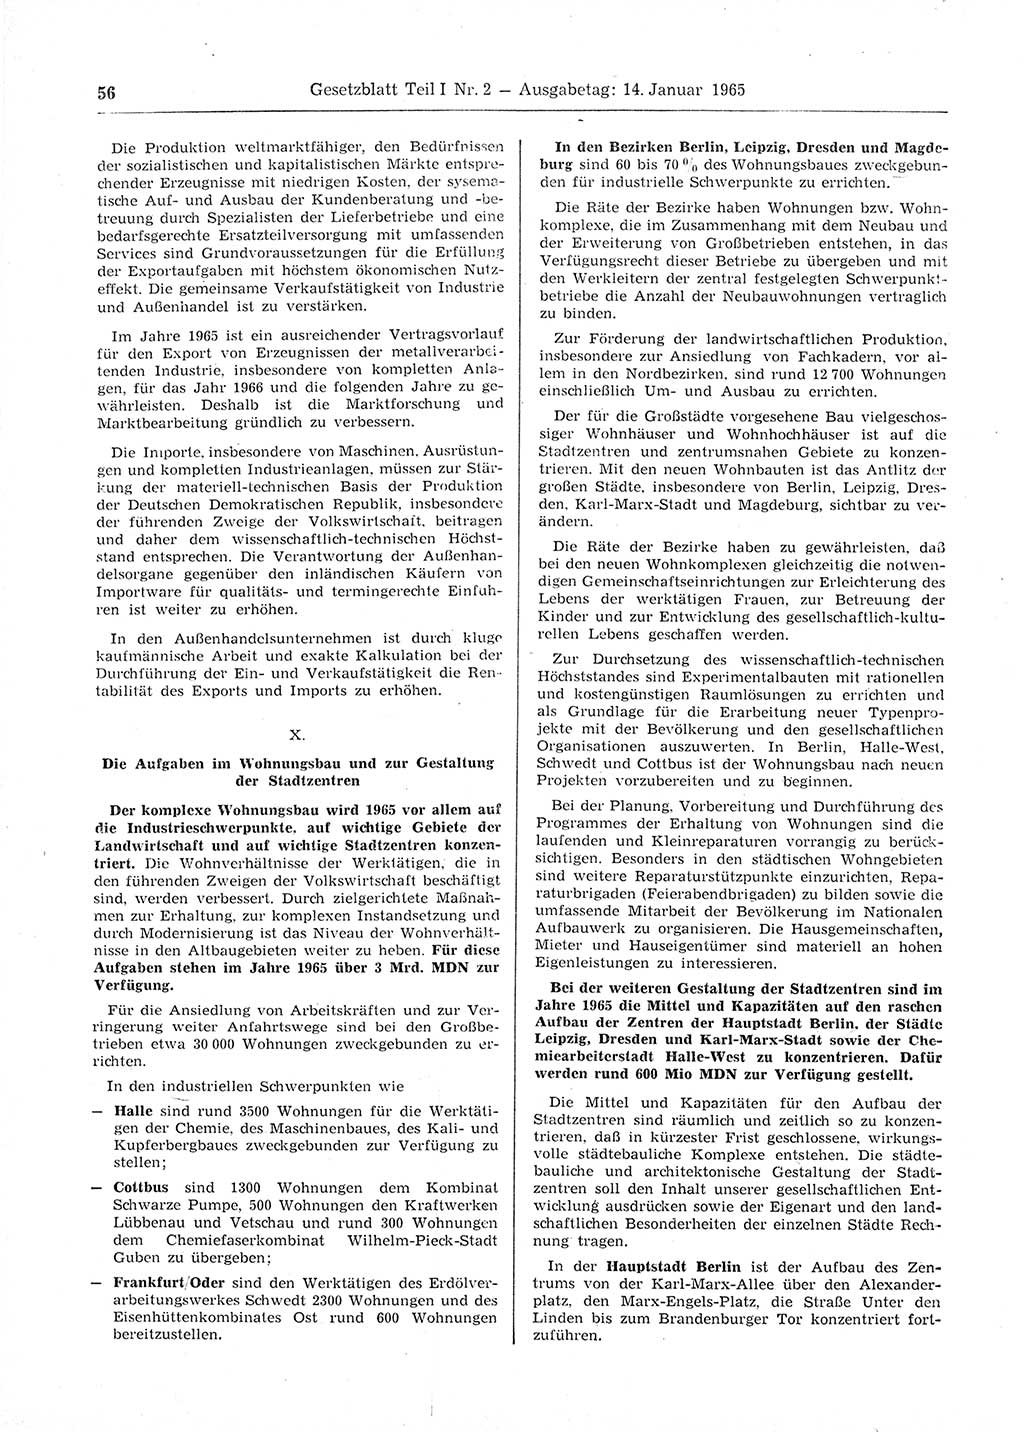 Gesetzblatt (GBl.) der Deutschen Demokratischen Republik (DDR) Teil Ⅰ 1965, Seite 56 (GBl. DDR Ⅰ 1965, S. 56)